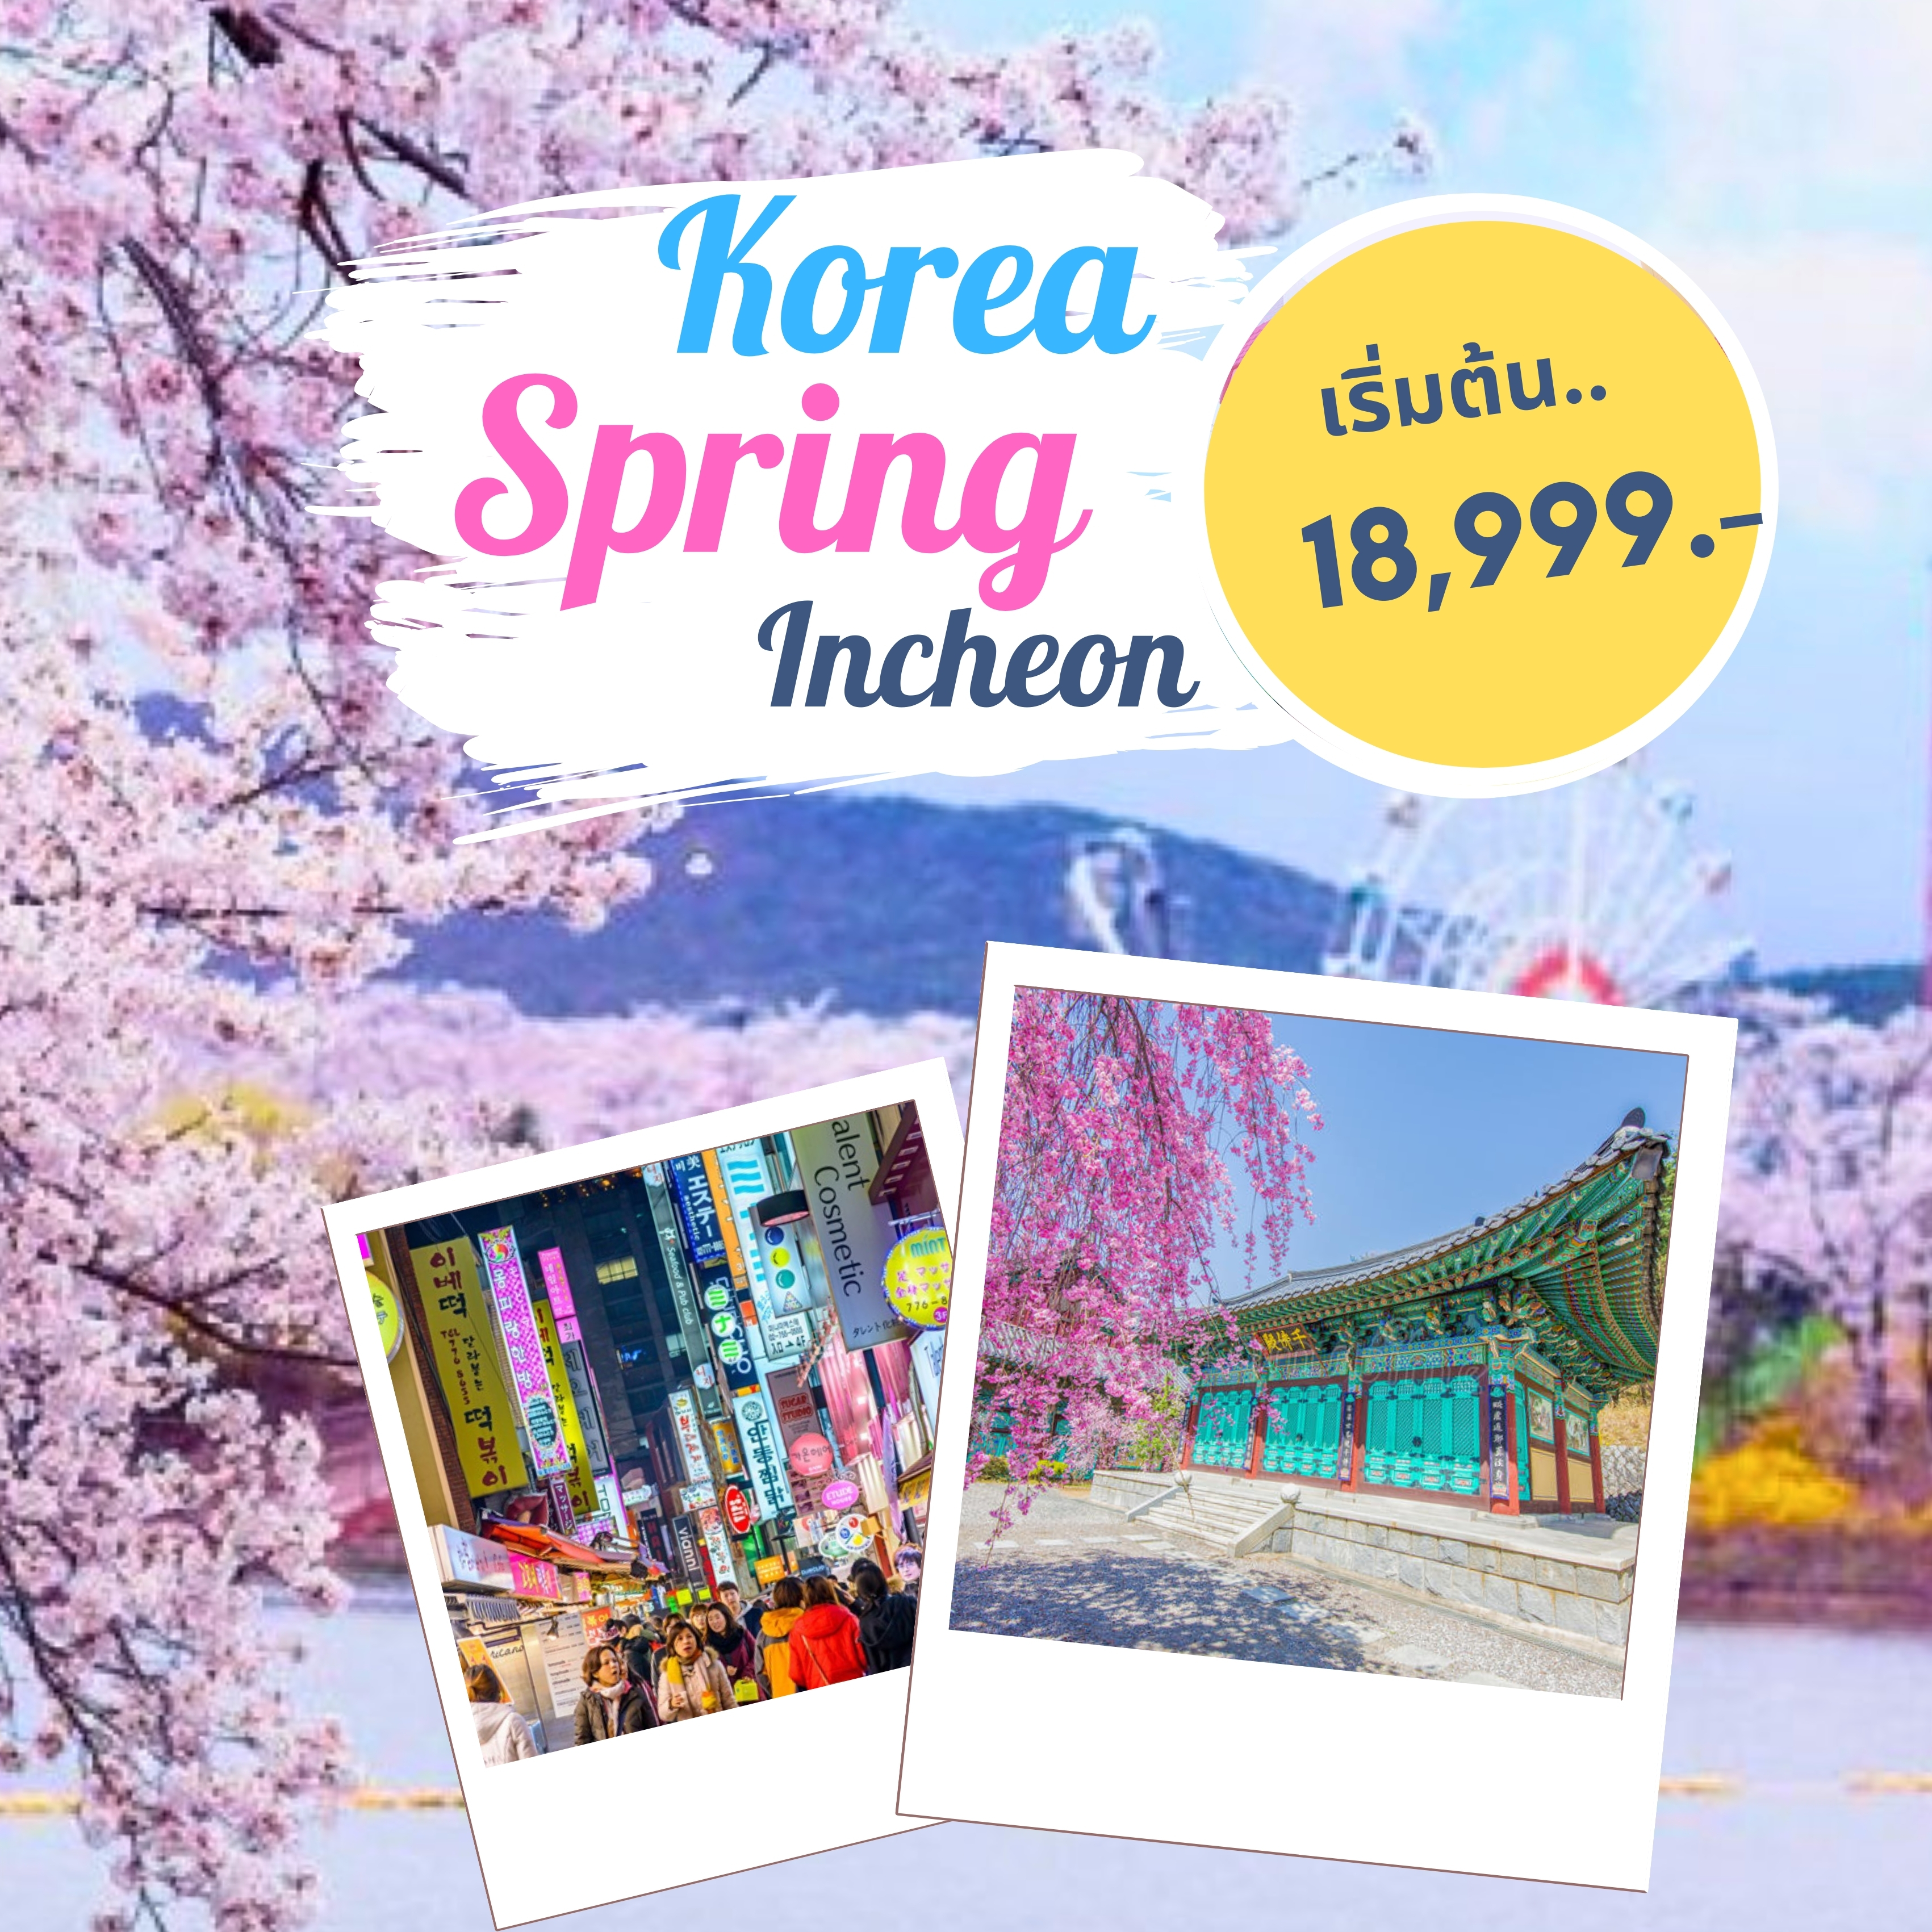 ทัวร์เกาหลี Spring Incheon  ปั่นเรียลไบค์ เอเวอร์แลนด์ กรุงโซล ช้อปปิ้งตลาดเมียงดงและฮงแด